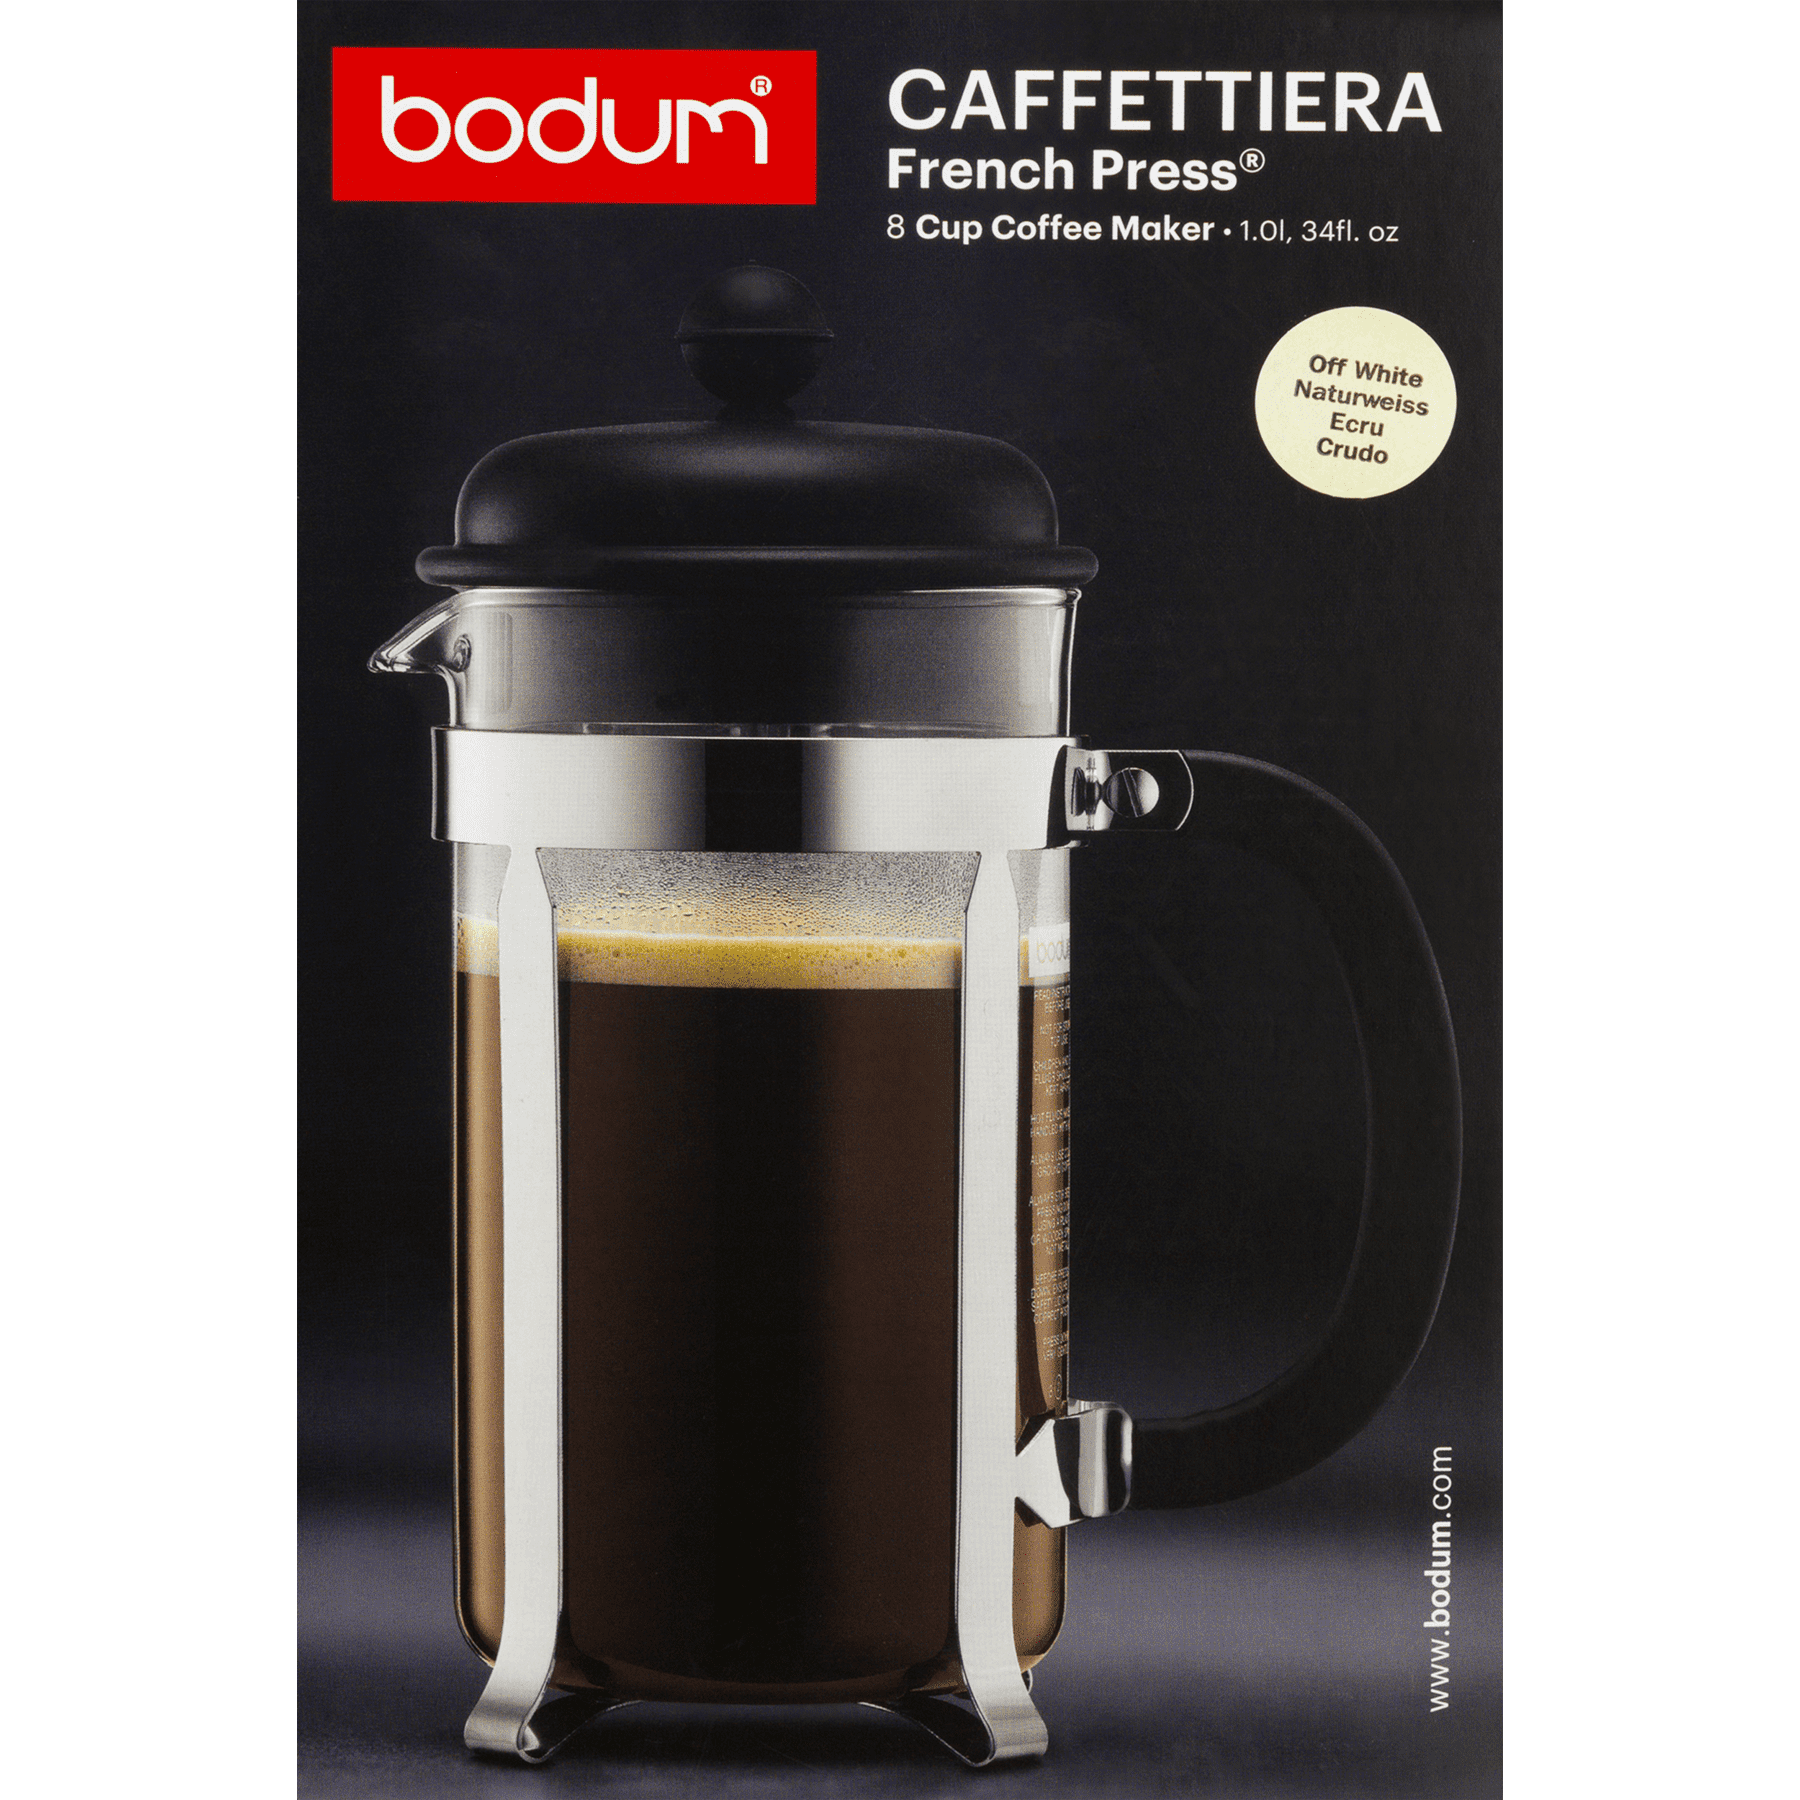 Bodum-Caffettiera-black-12 oz French press - Savaya Coffee Market